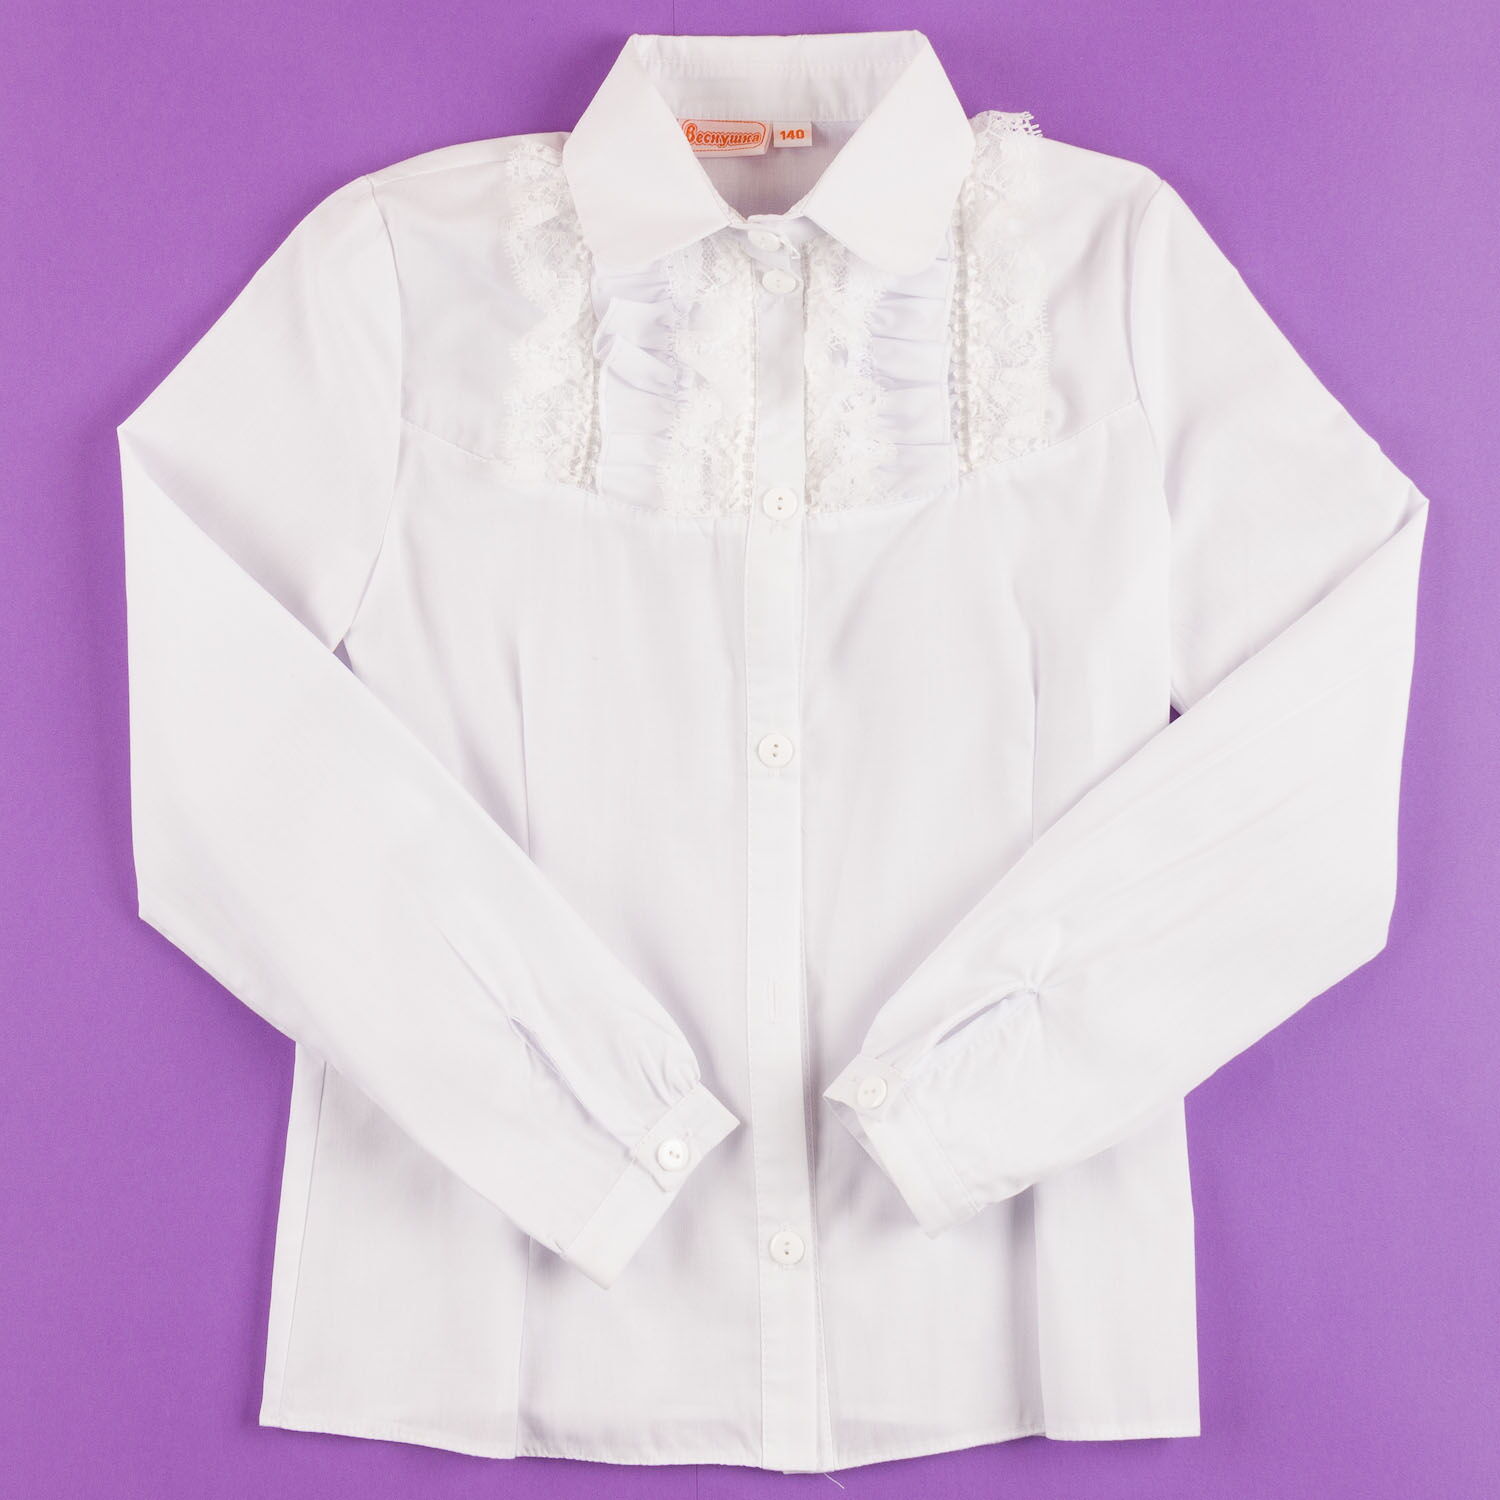 Блузка с длинным рукавом Веснушка белая 3003 - цена